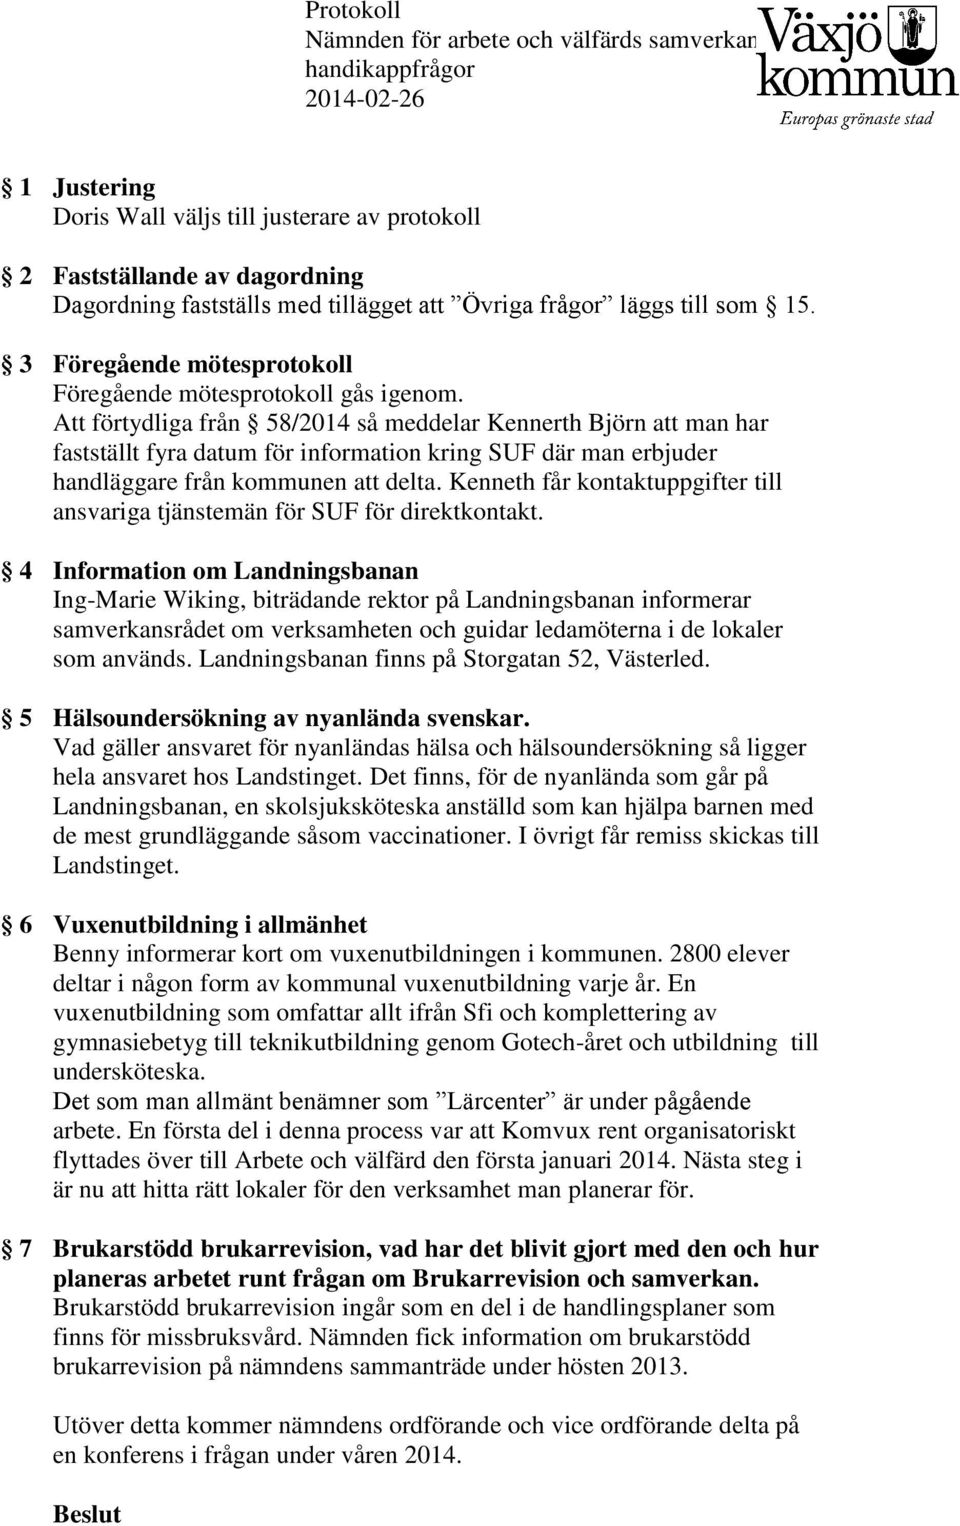 Att förtydliga från 58/2014 så meddelar Kennerth Björn att man har fastställt fyra datum för information kring SUF där man erbjuder handläggare från kommunen att delta.